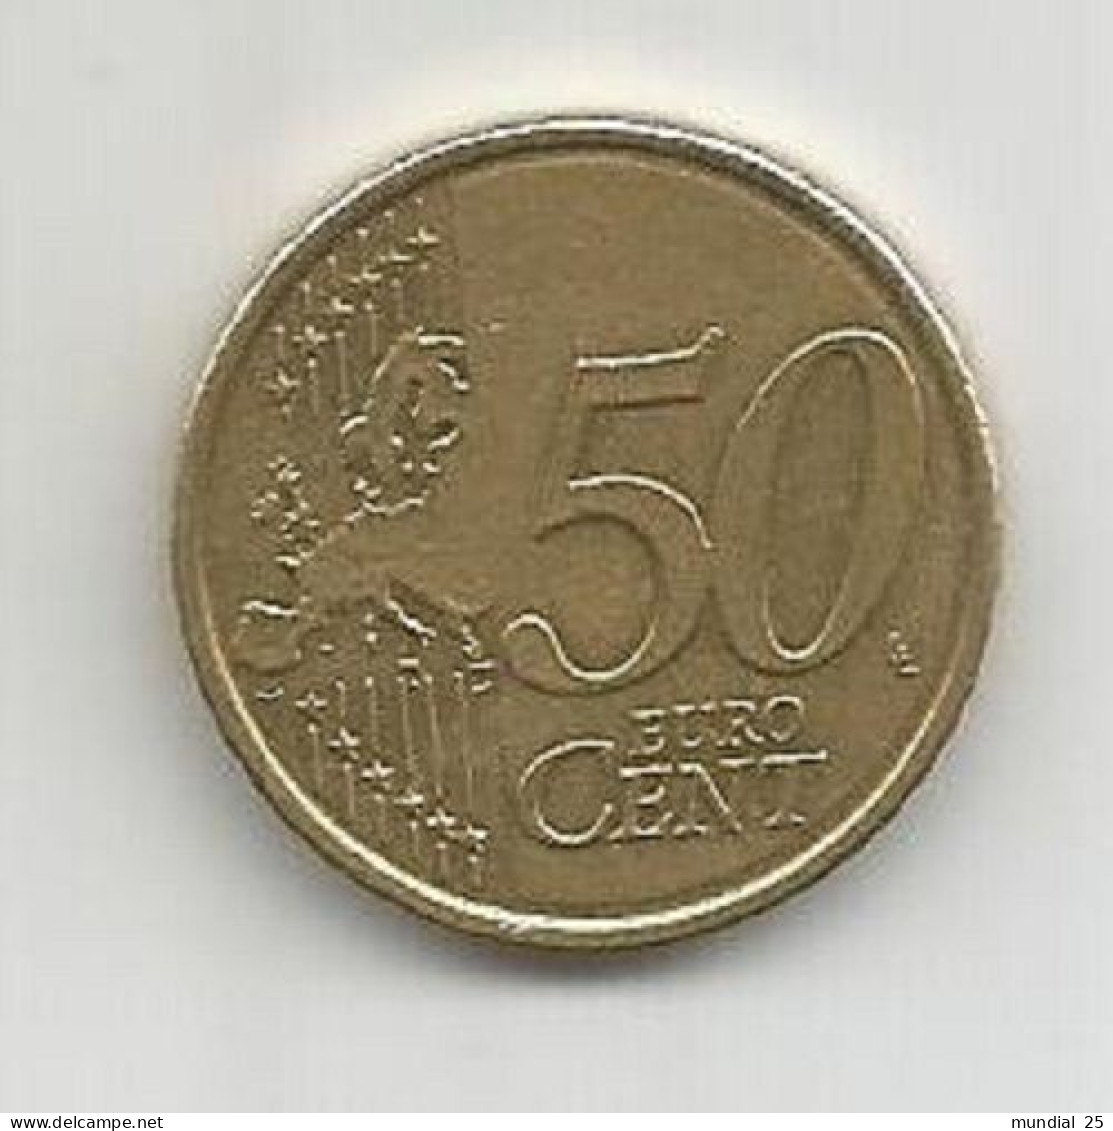 BELGIUM 50 EURO CENT 2012 - Belgium